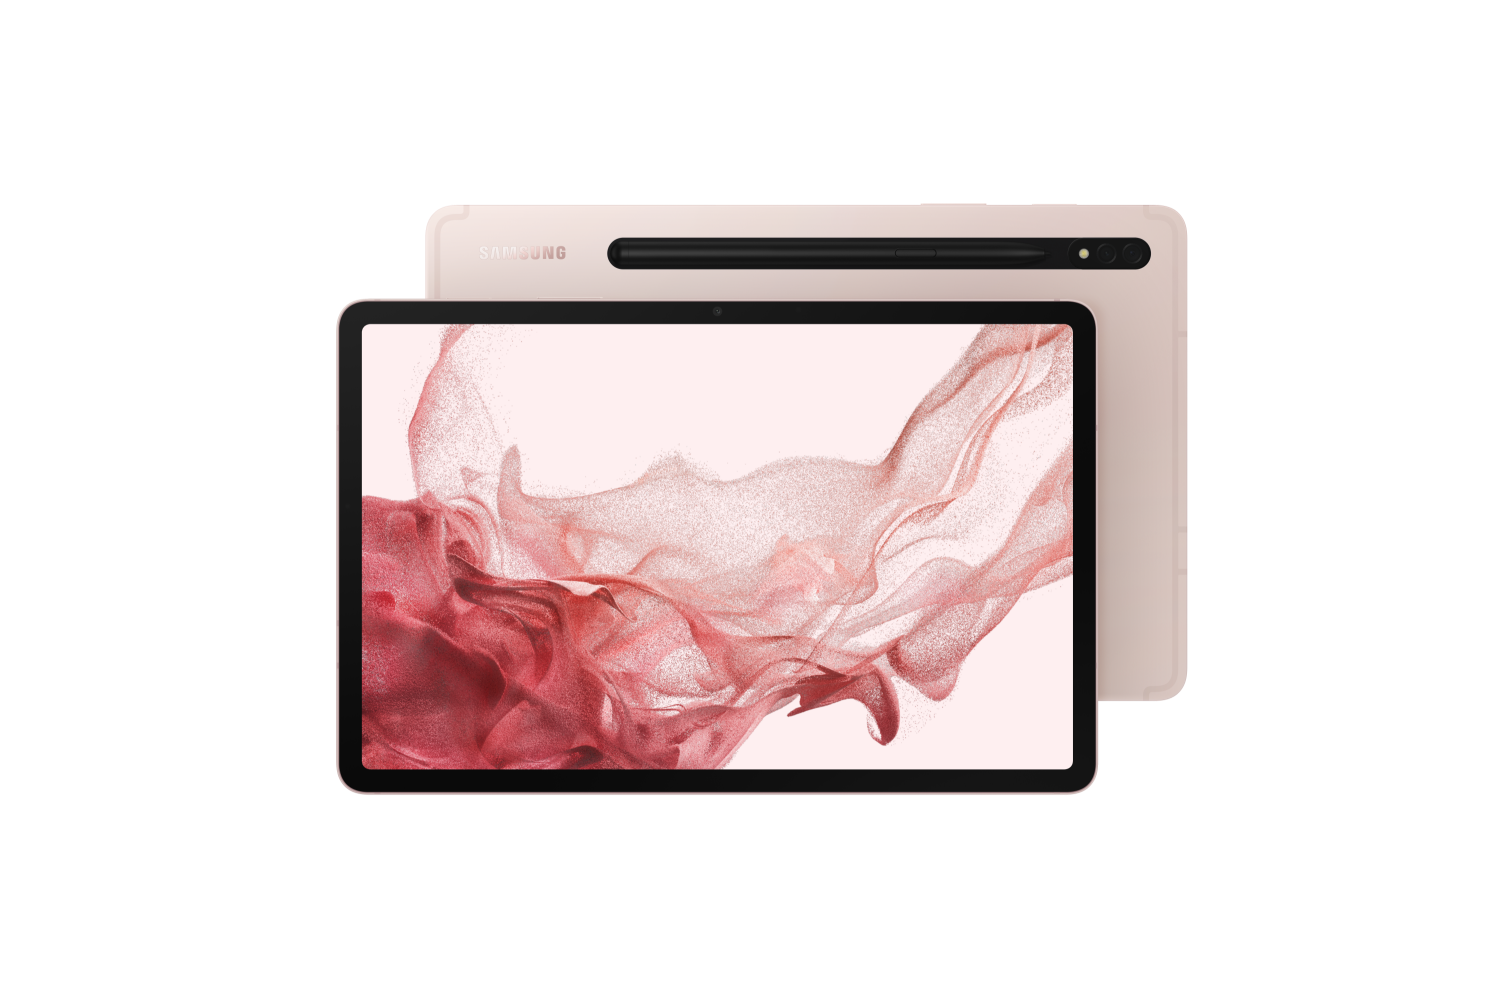 Galaxy Tab S8+ (Wi-Fi) pink-gold 128 GB | Samsung Caribbean